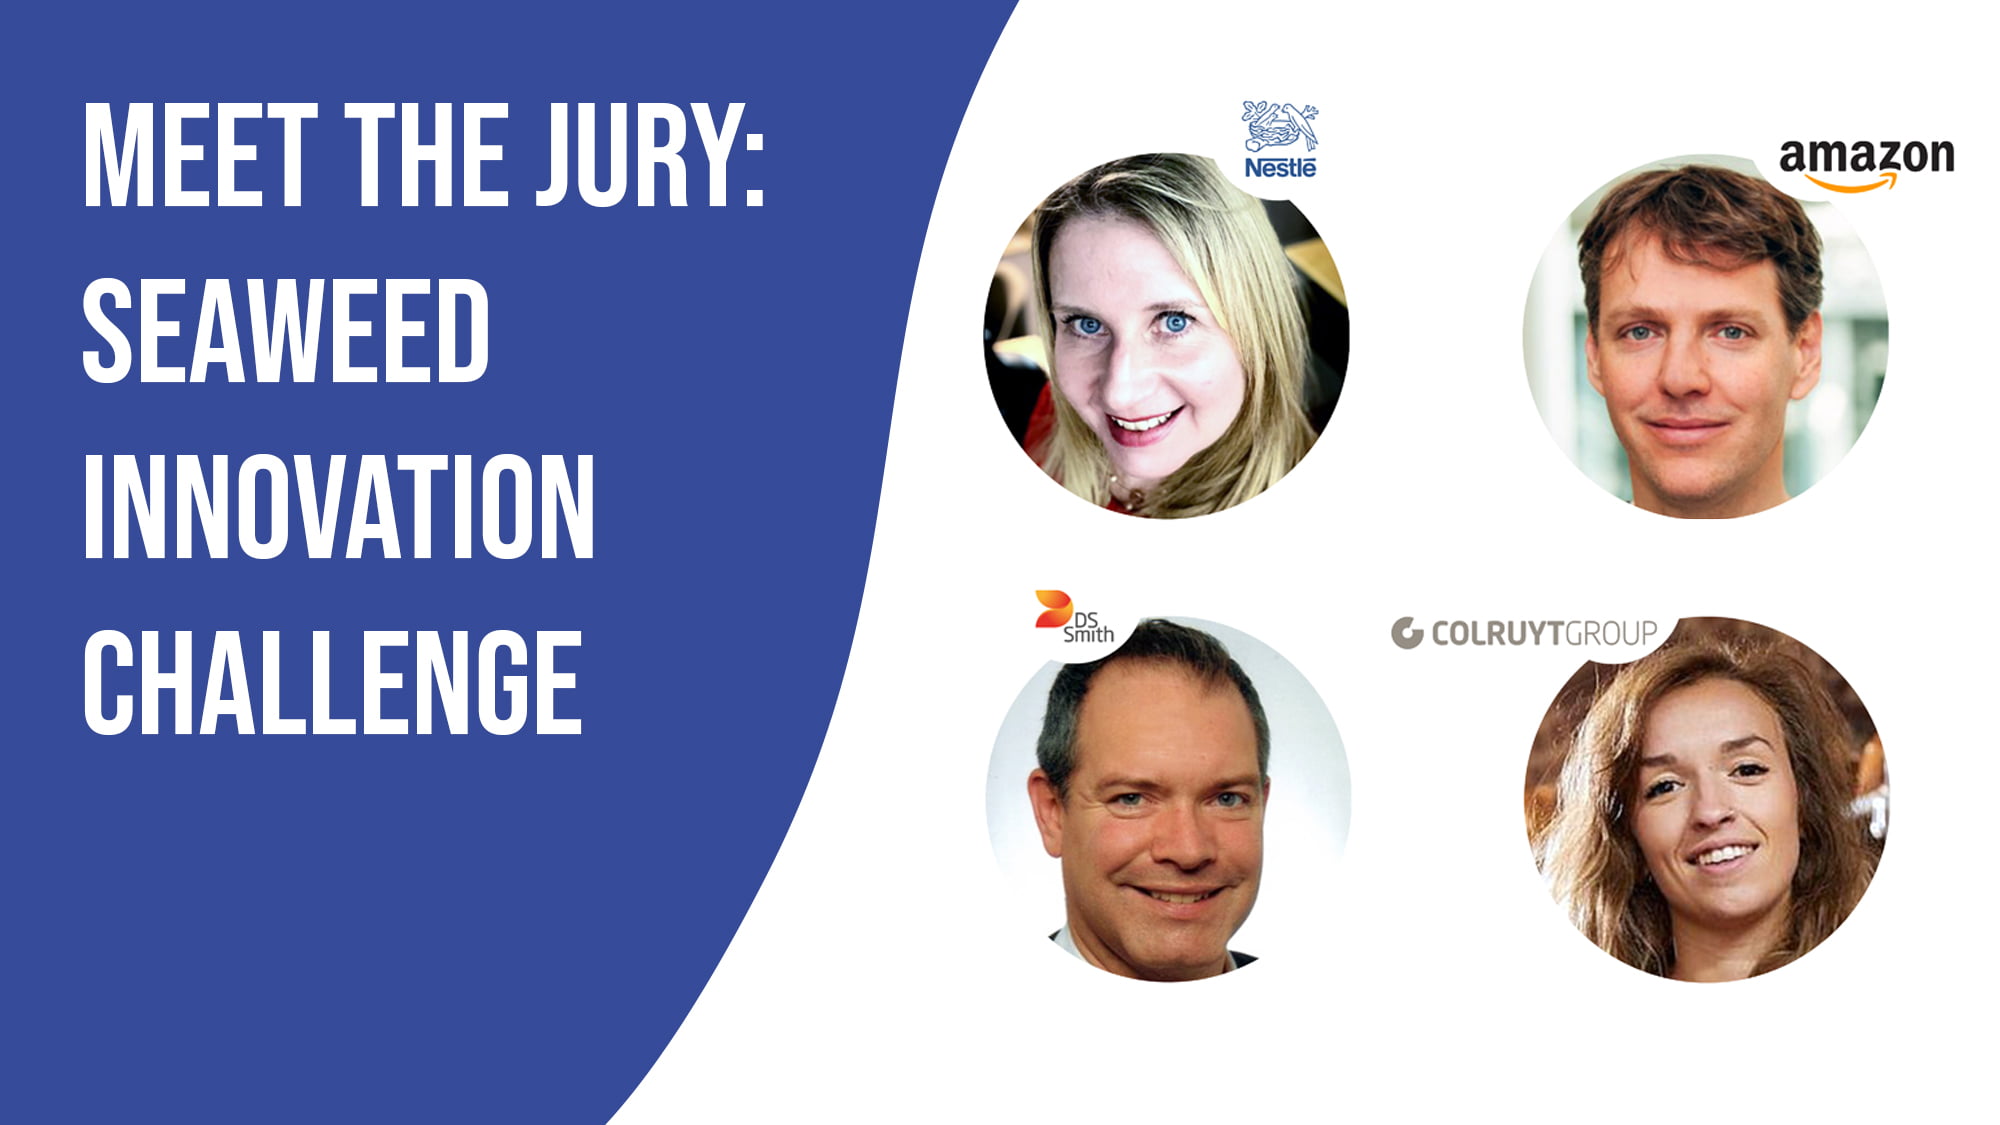 Seaweed Innovation Challenge Jury